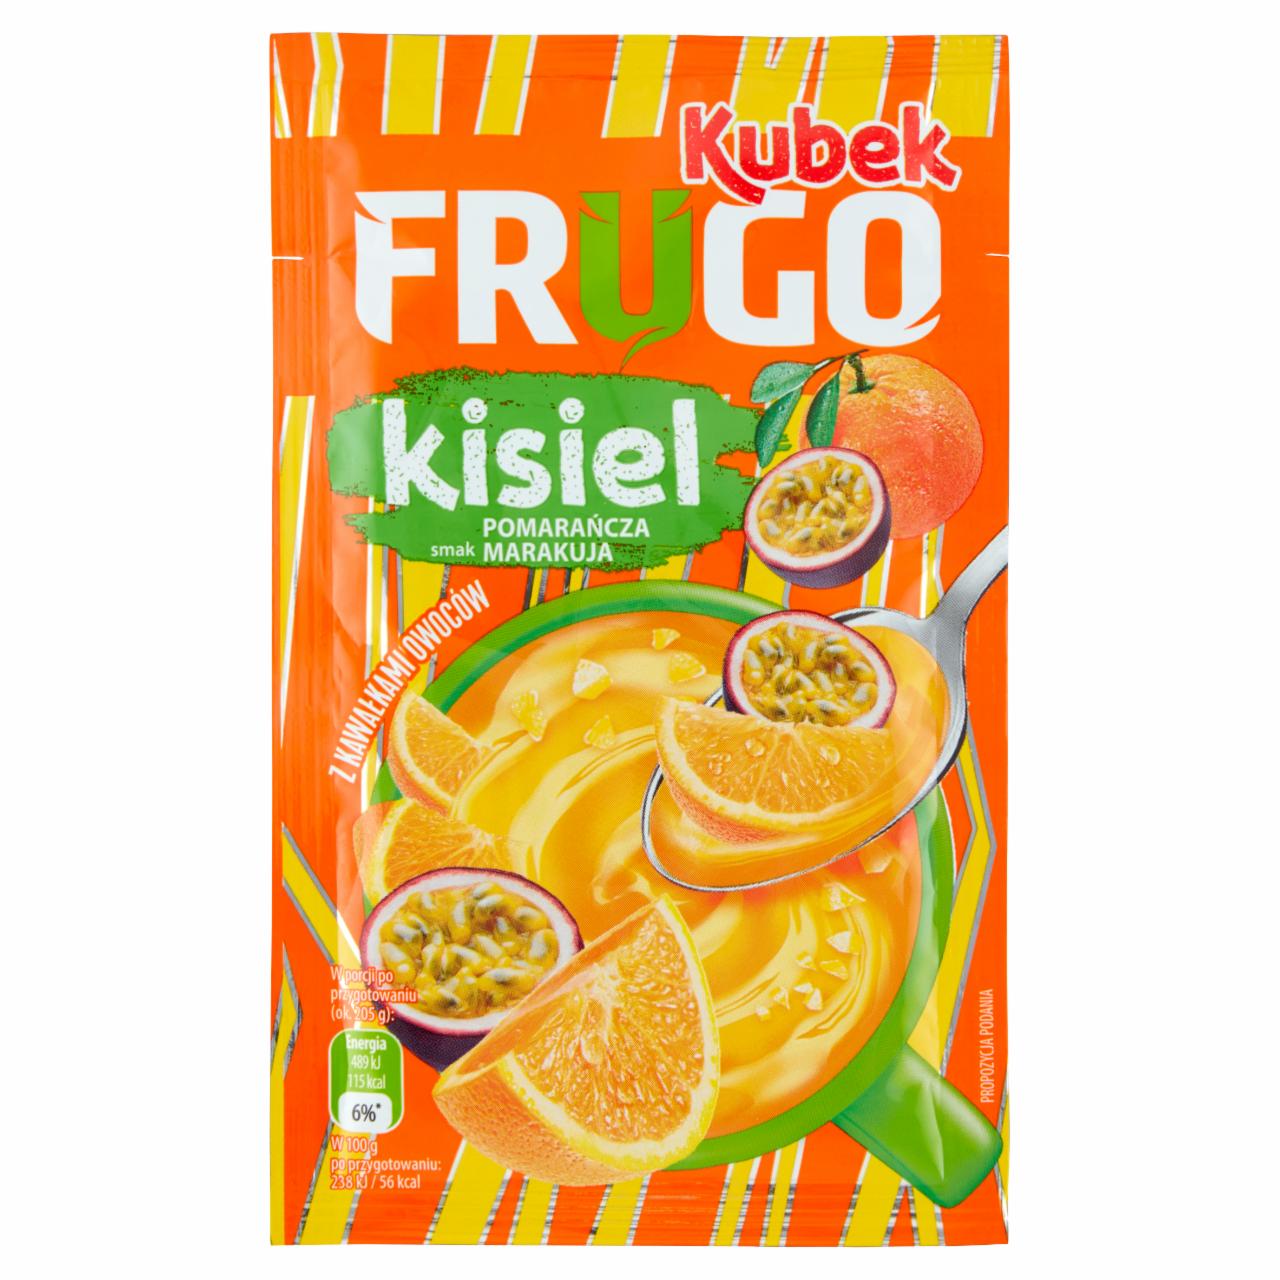 Zdjęcia - Kubek Frugo Kisiel z kawałkami owoców smak pomarańcza marakuja 30 g